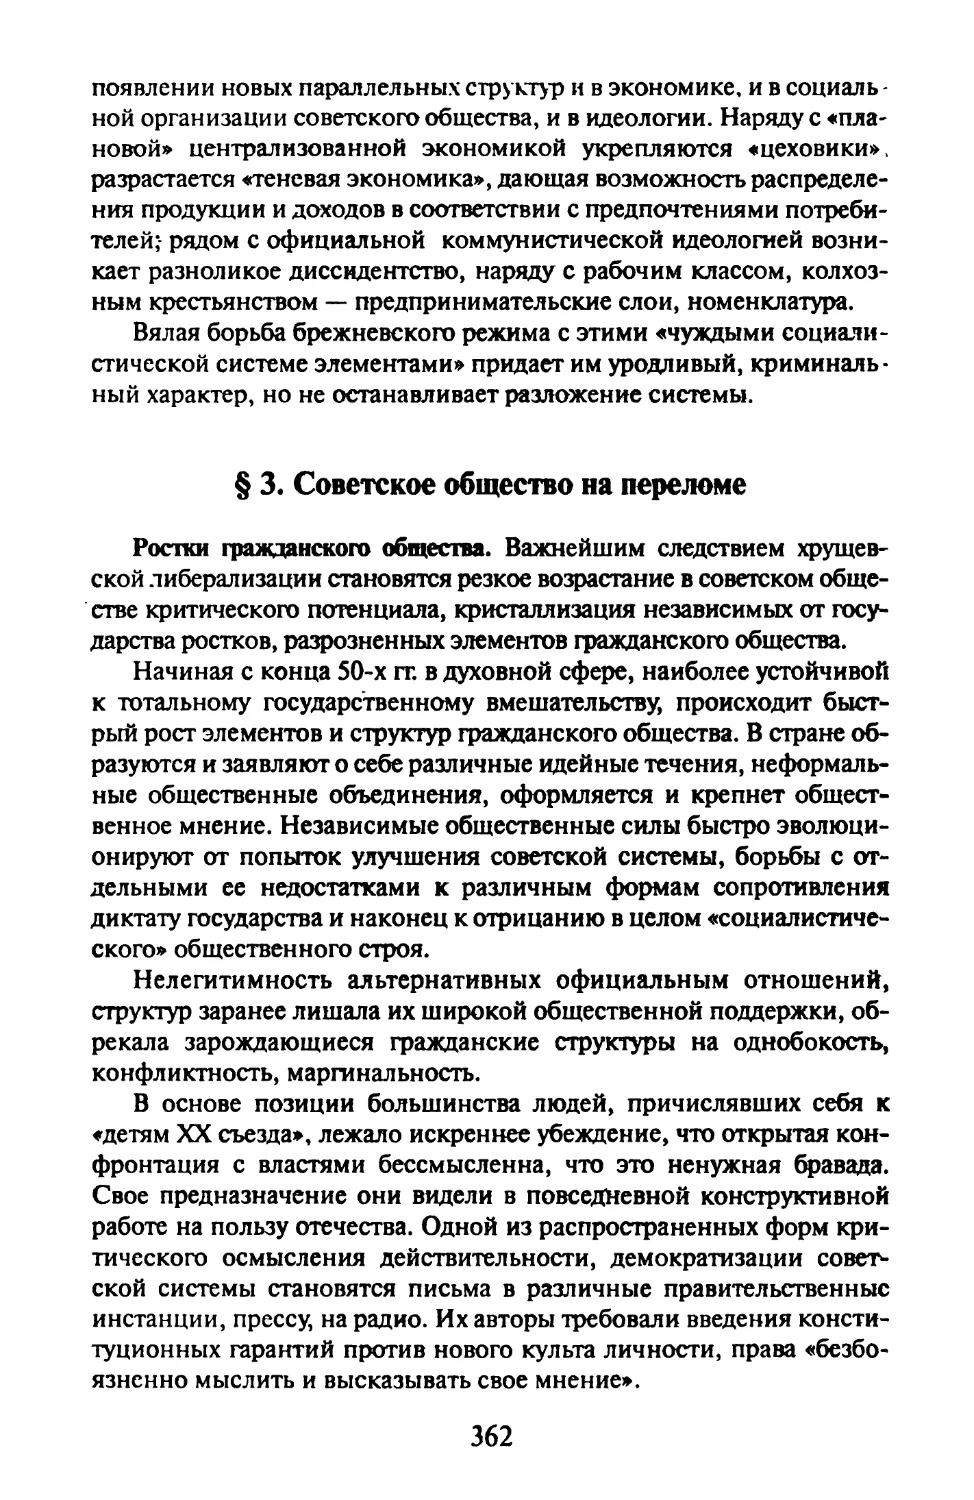 § 3. Советское общество на переломе